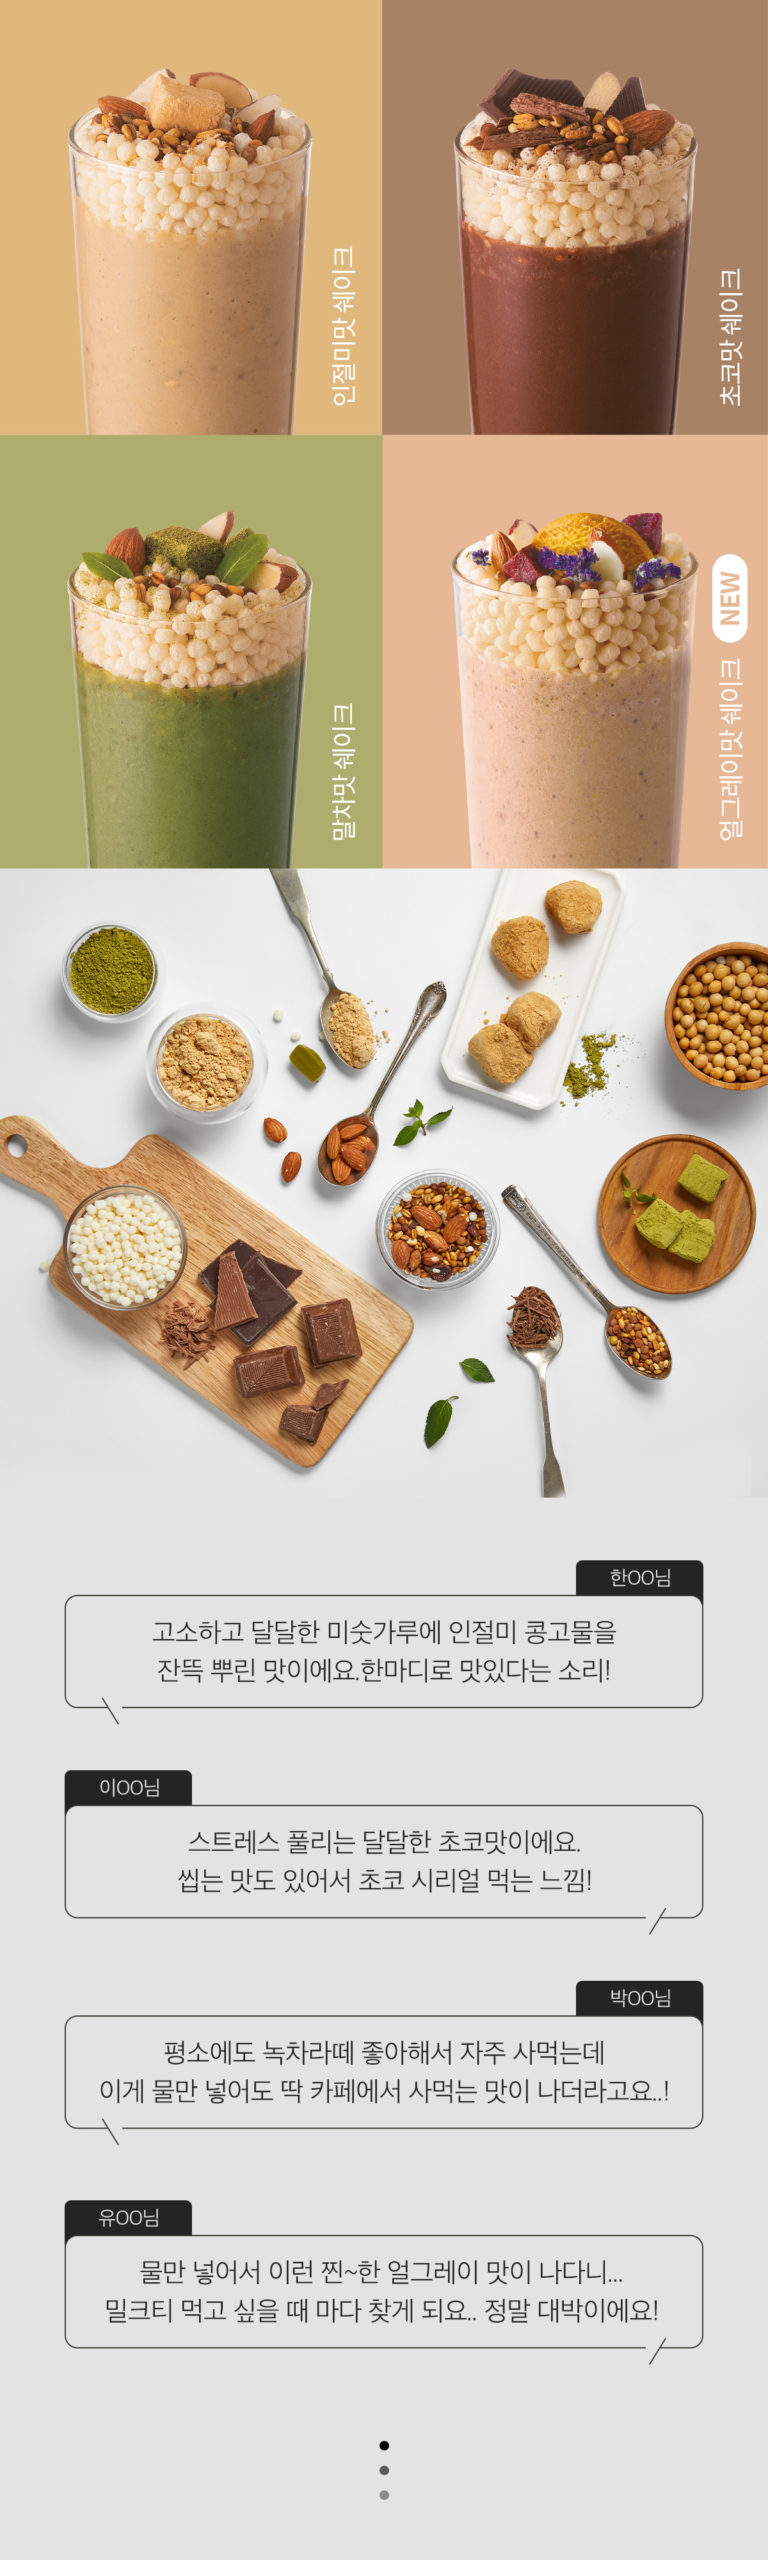 글램디] 쉐이크 (초코맛) 40G - 홍콩 신세계마트 E Shop